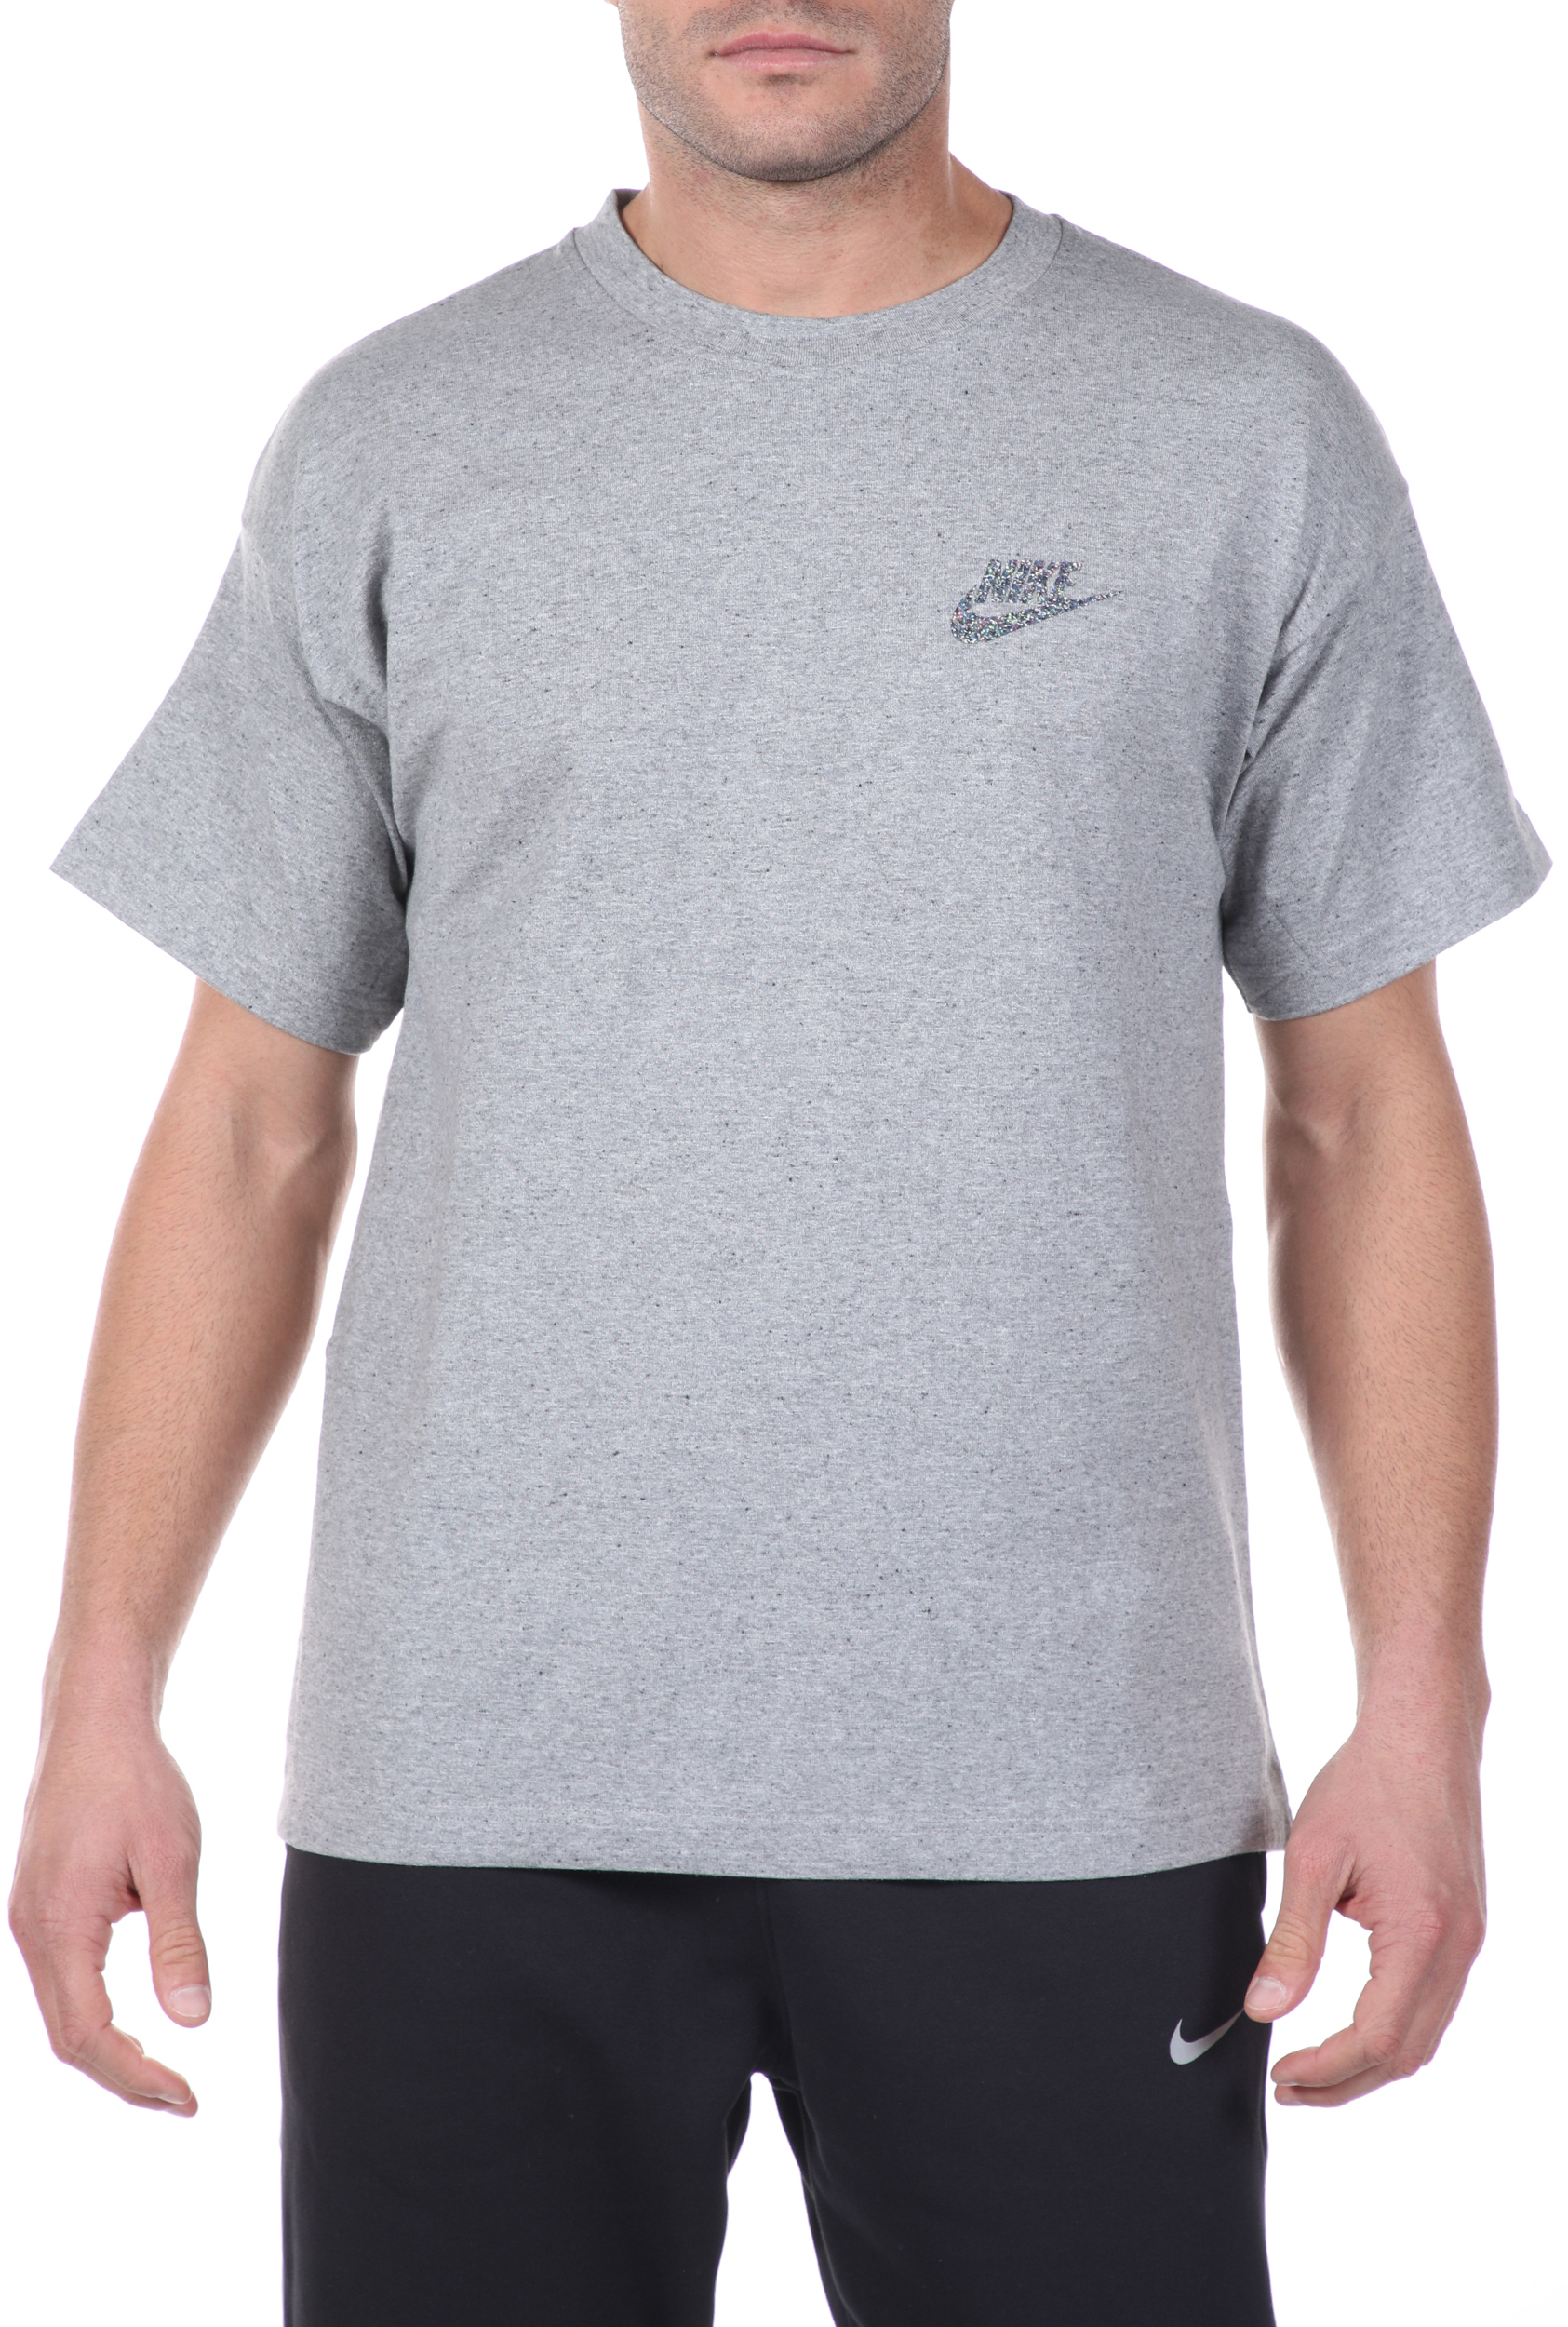 Ανδρικά/Ρούχα/Αθλητικά/T-shirt NIKE - Ανδρικό t-shirt NIKE NSW SS TOP JSY γκρι